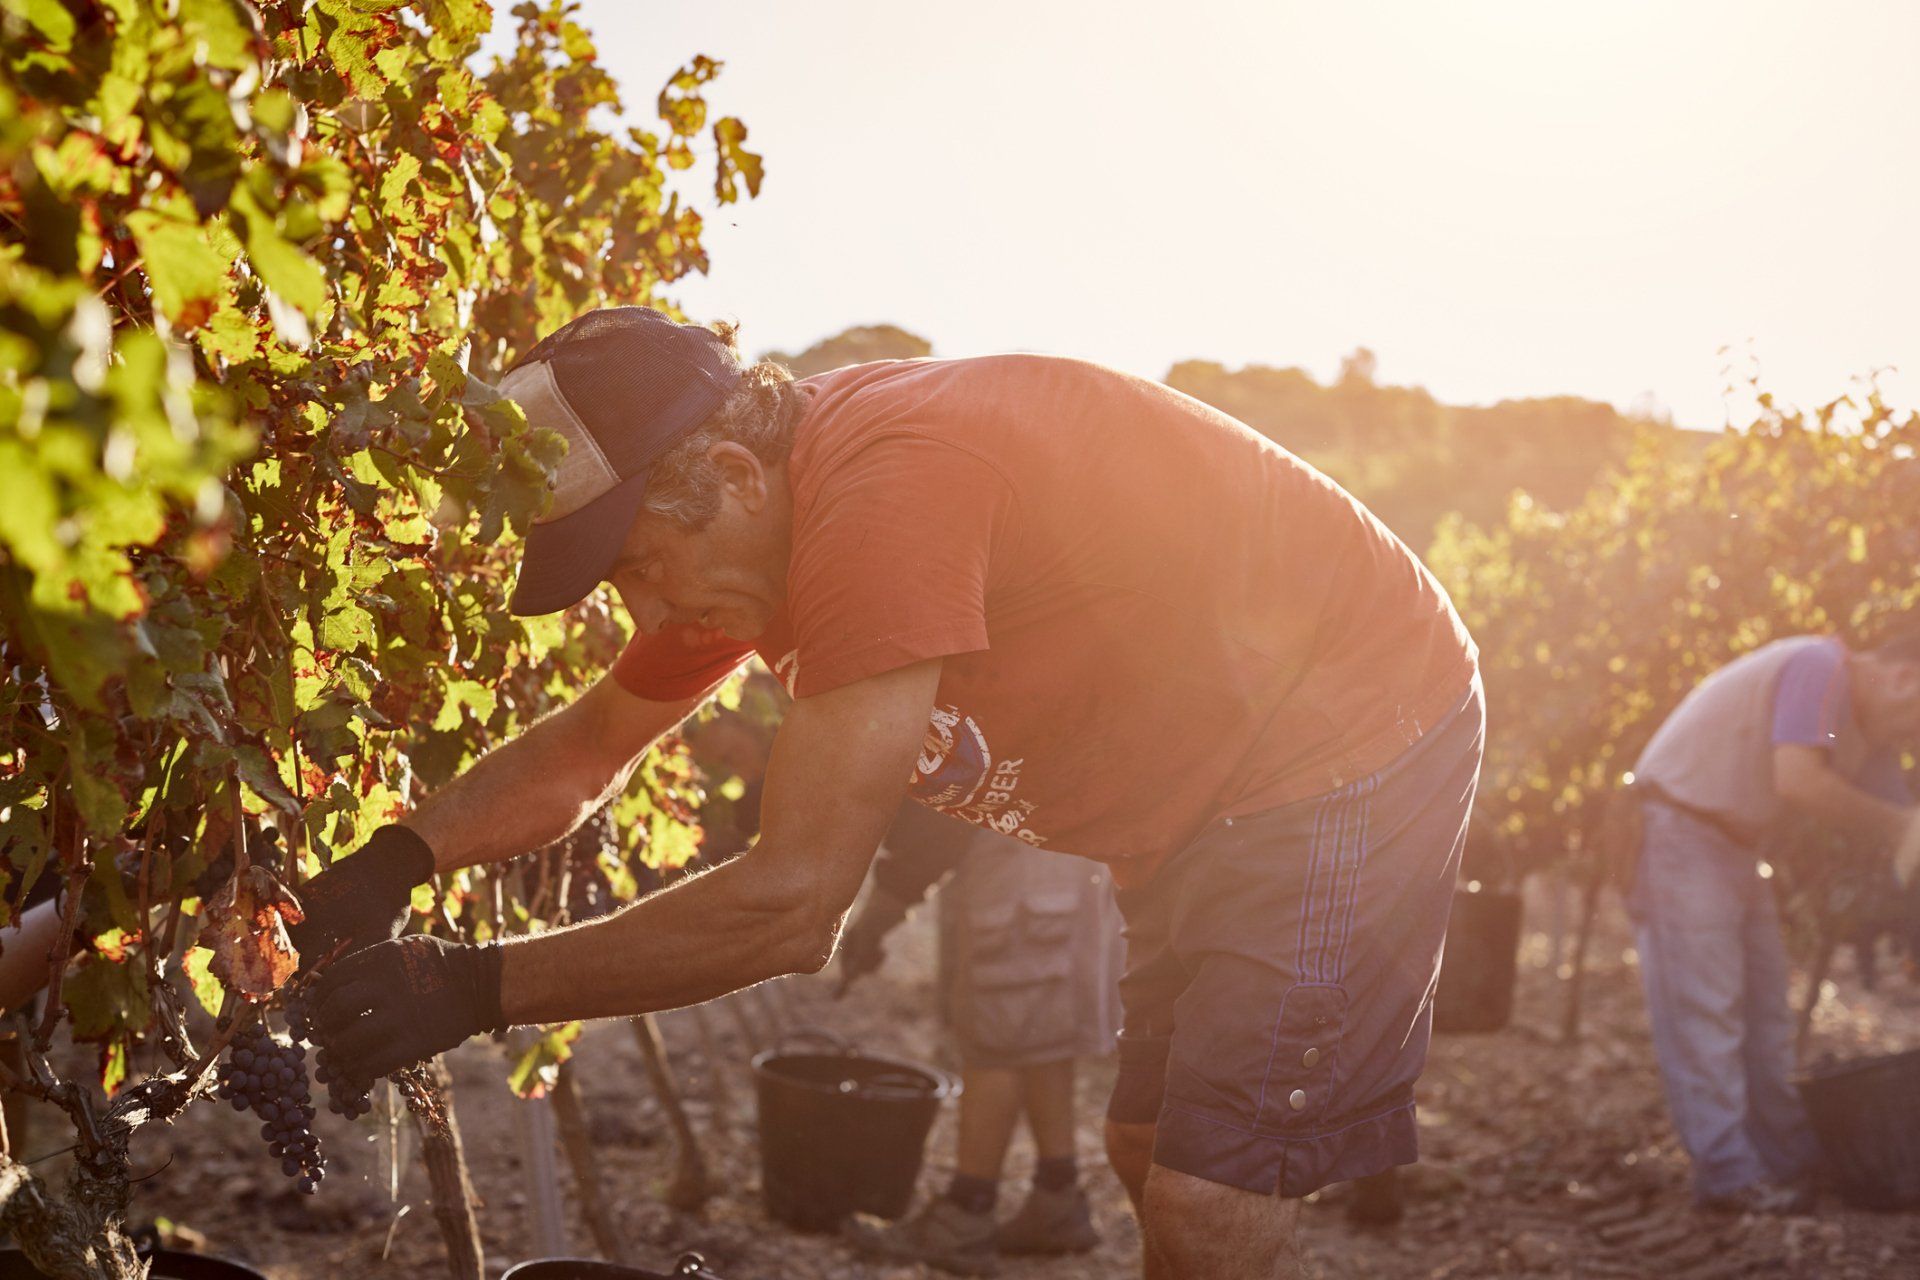 Vintage worker harvesting grapes